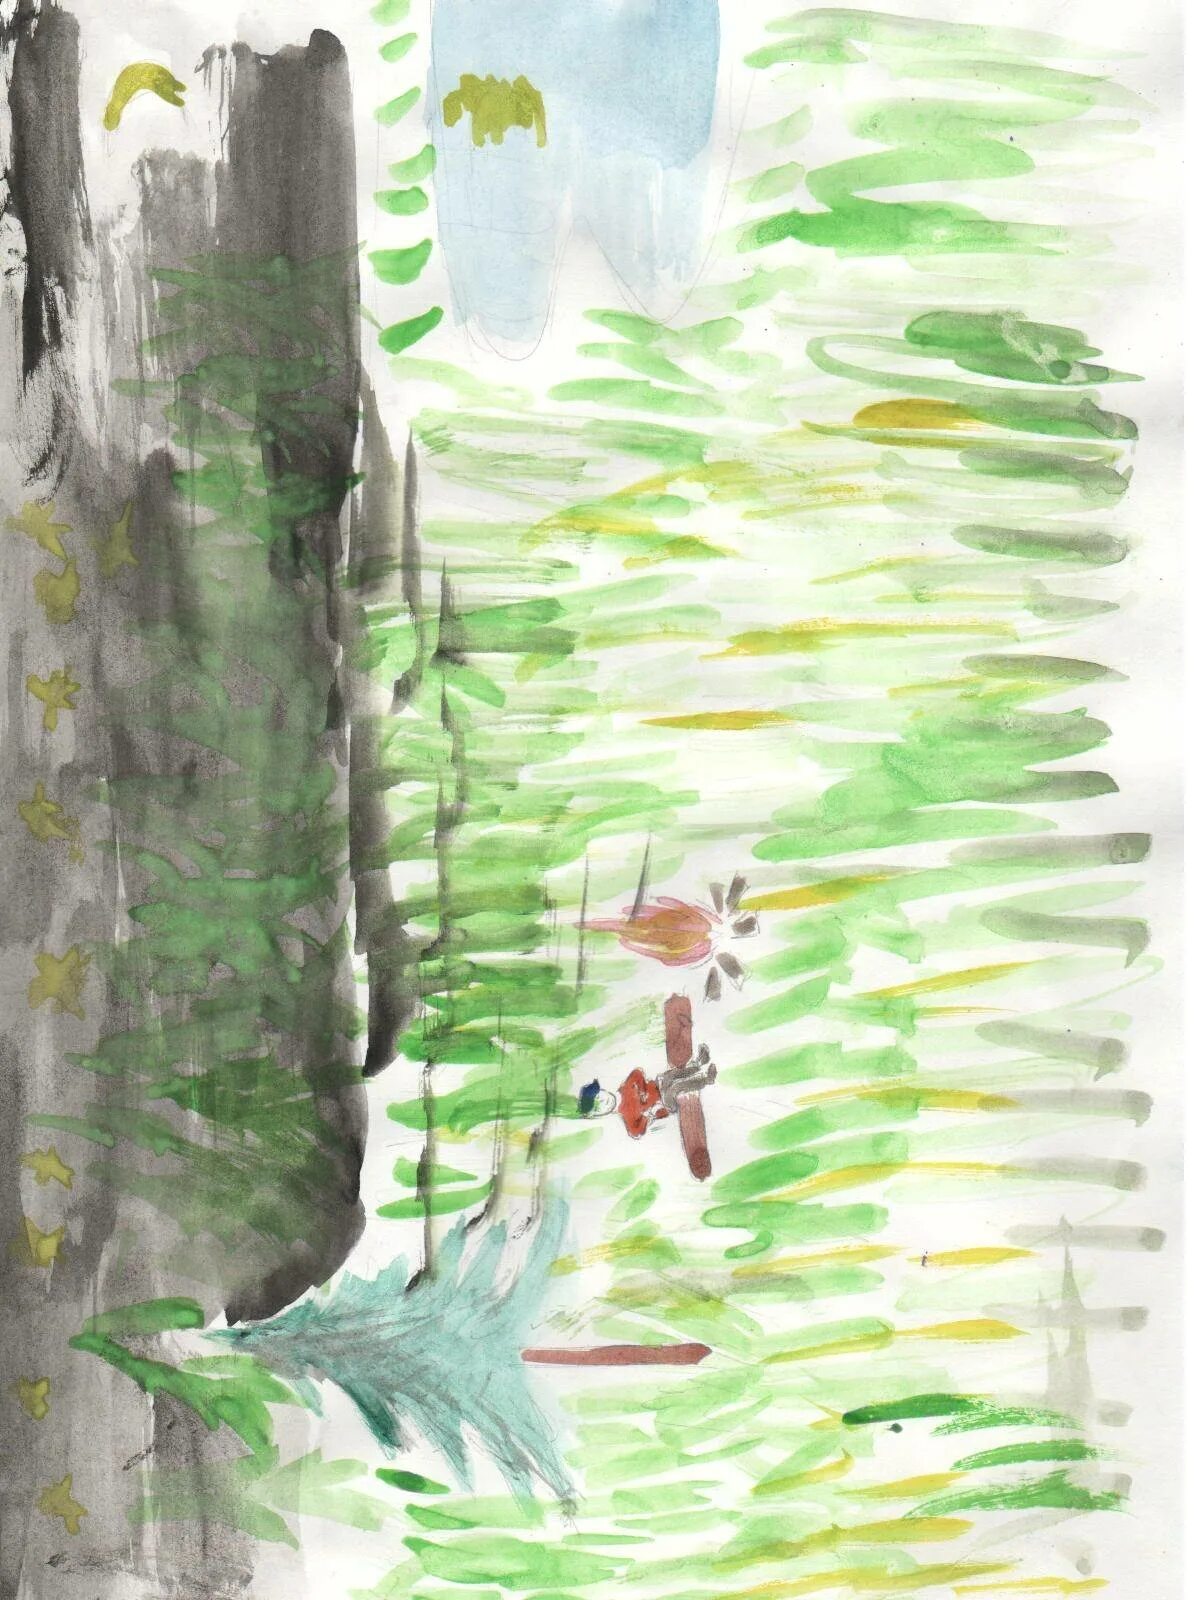 Иллюстрация васюткино озеро нарисовать 5 класс. Иллюстрация Васюткино озеро 5 класс. Иллюстрация к сказке Васюткино озеро. Иллюстрация к рассказу Васюткино озеро. Астафьев Васюткино озеро иллюстрации.